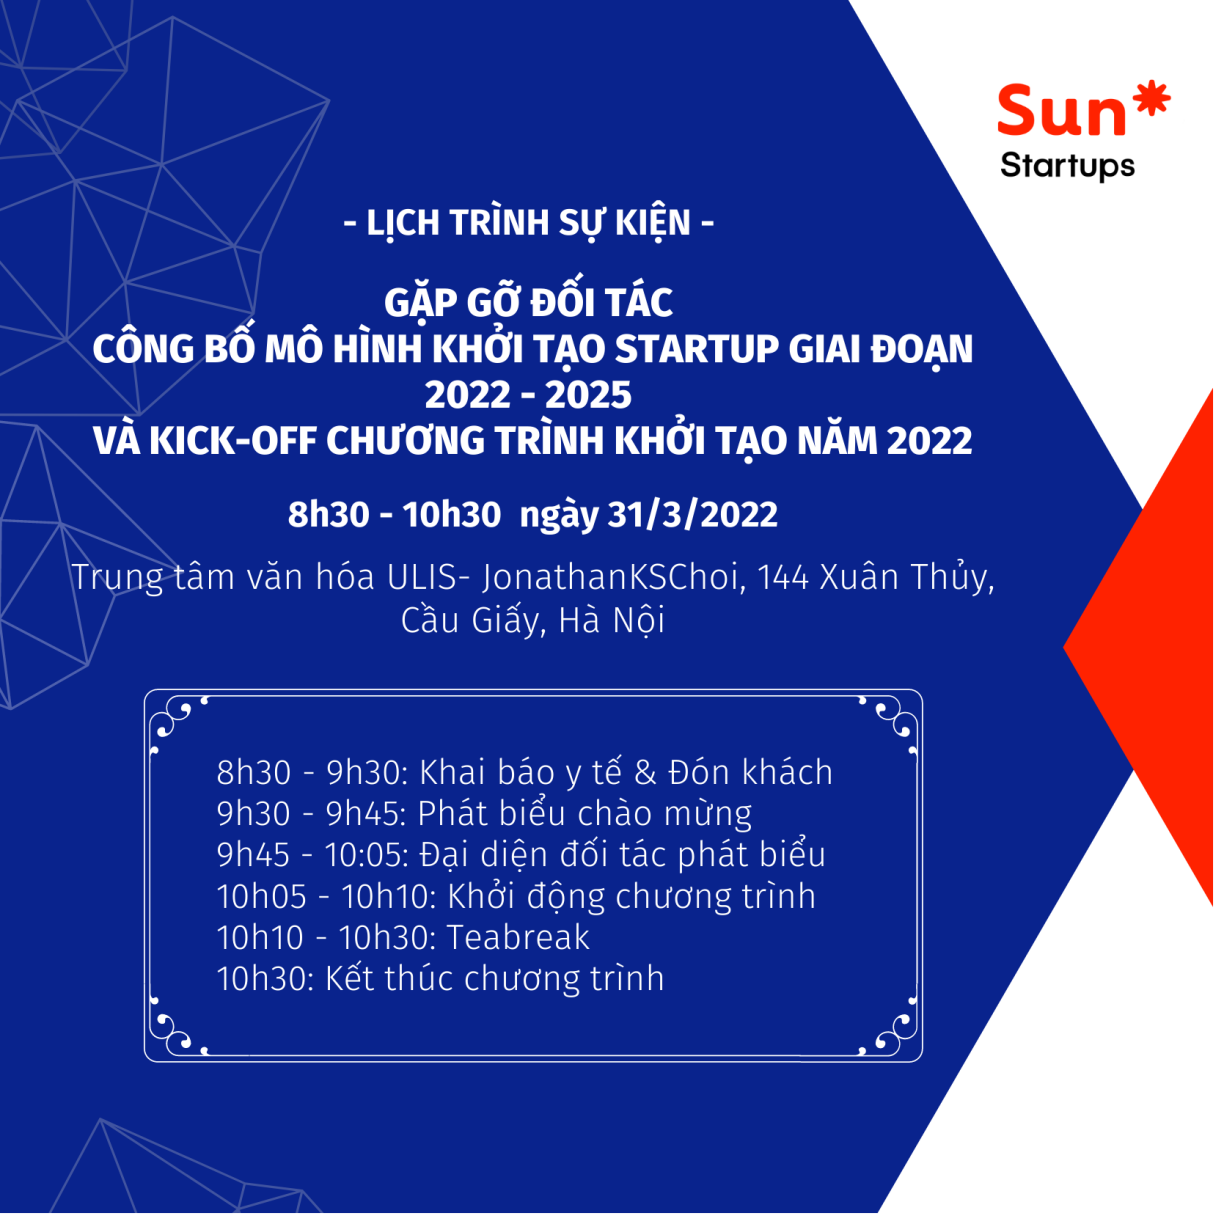 Sun* Startups công bố mô hình khởi tạo startup giai đoạn sớm 2022-2025